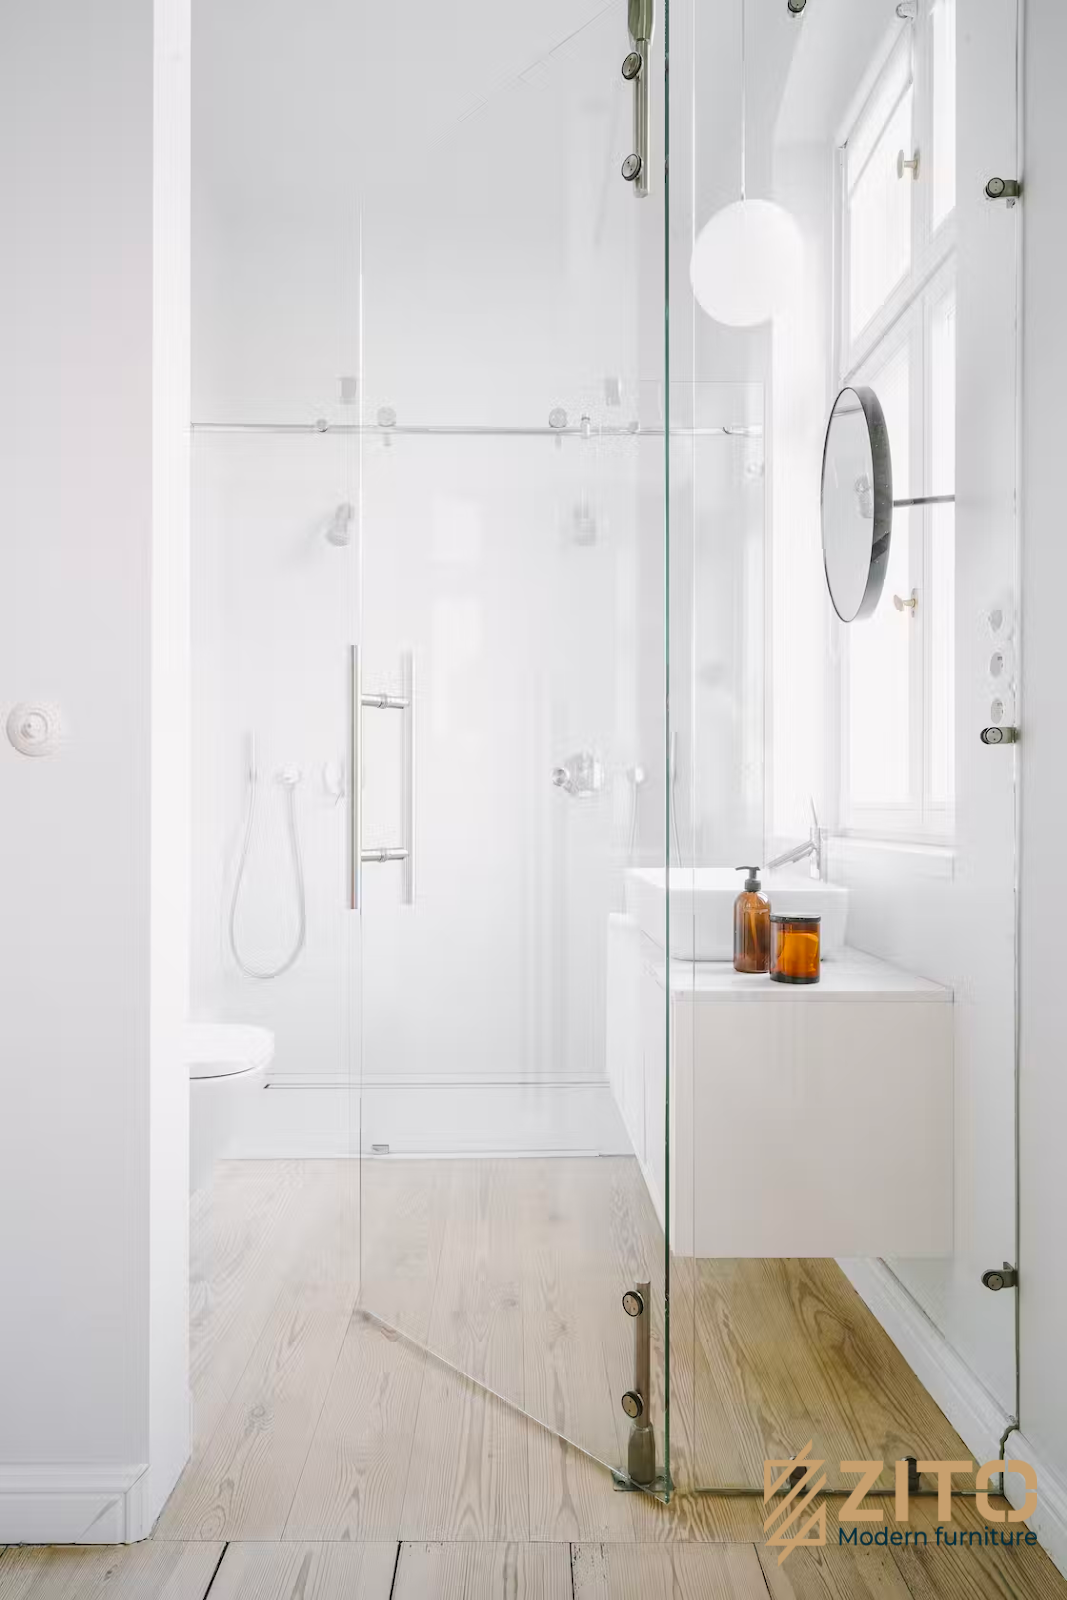 Thiết kế nội thất không gian phòng tắm sử dụng kính trong suốt hiện đại và tinh tế